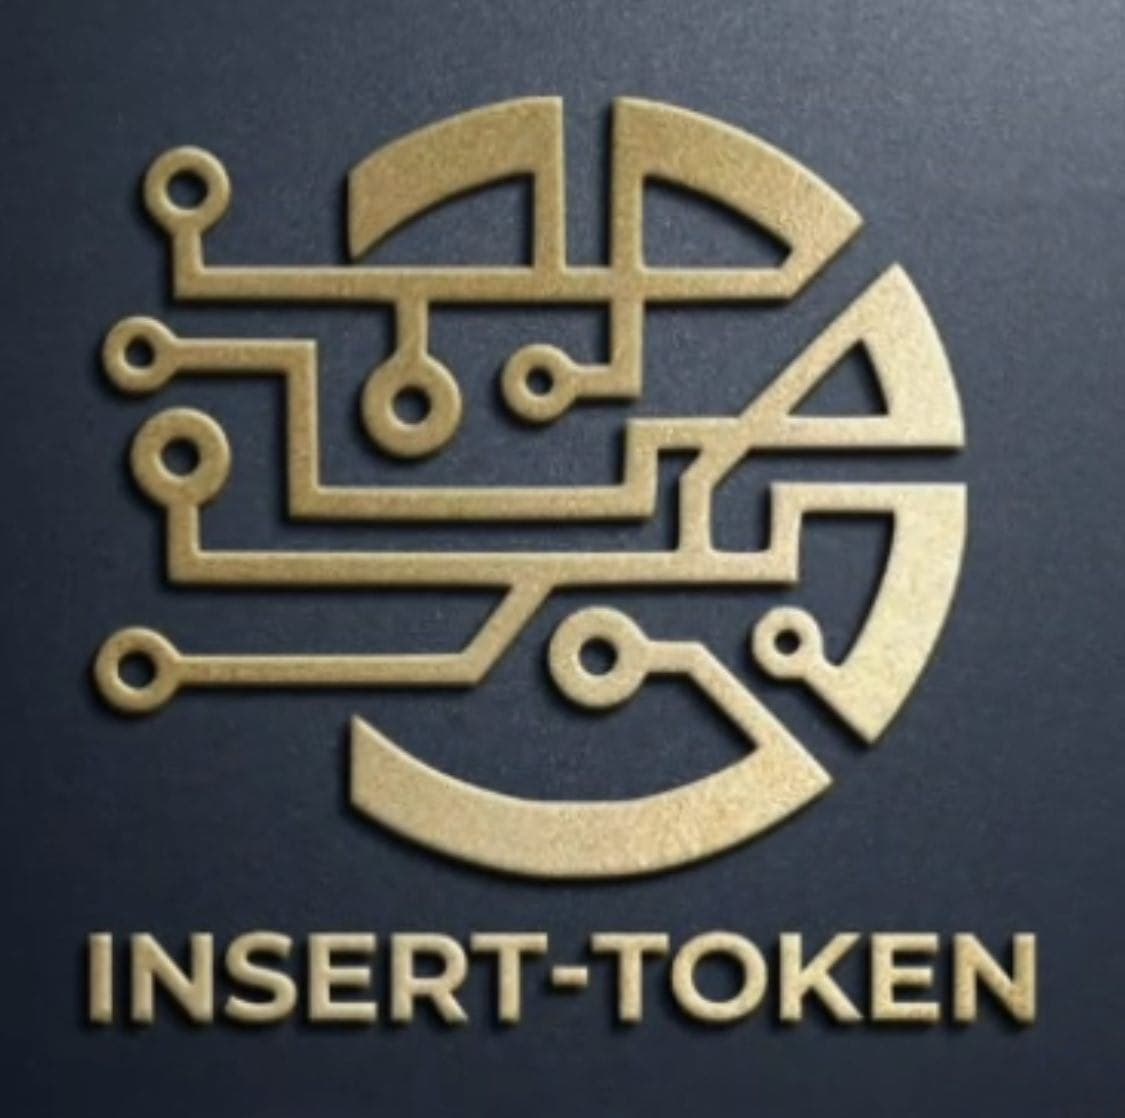 INSERT-TOKEN logo